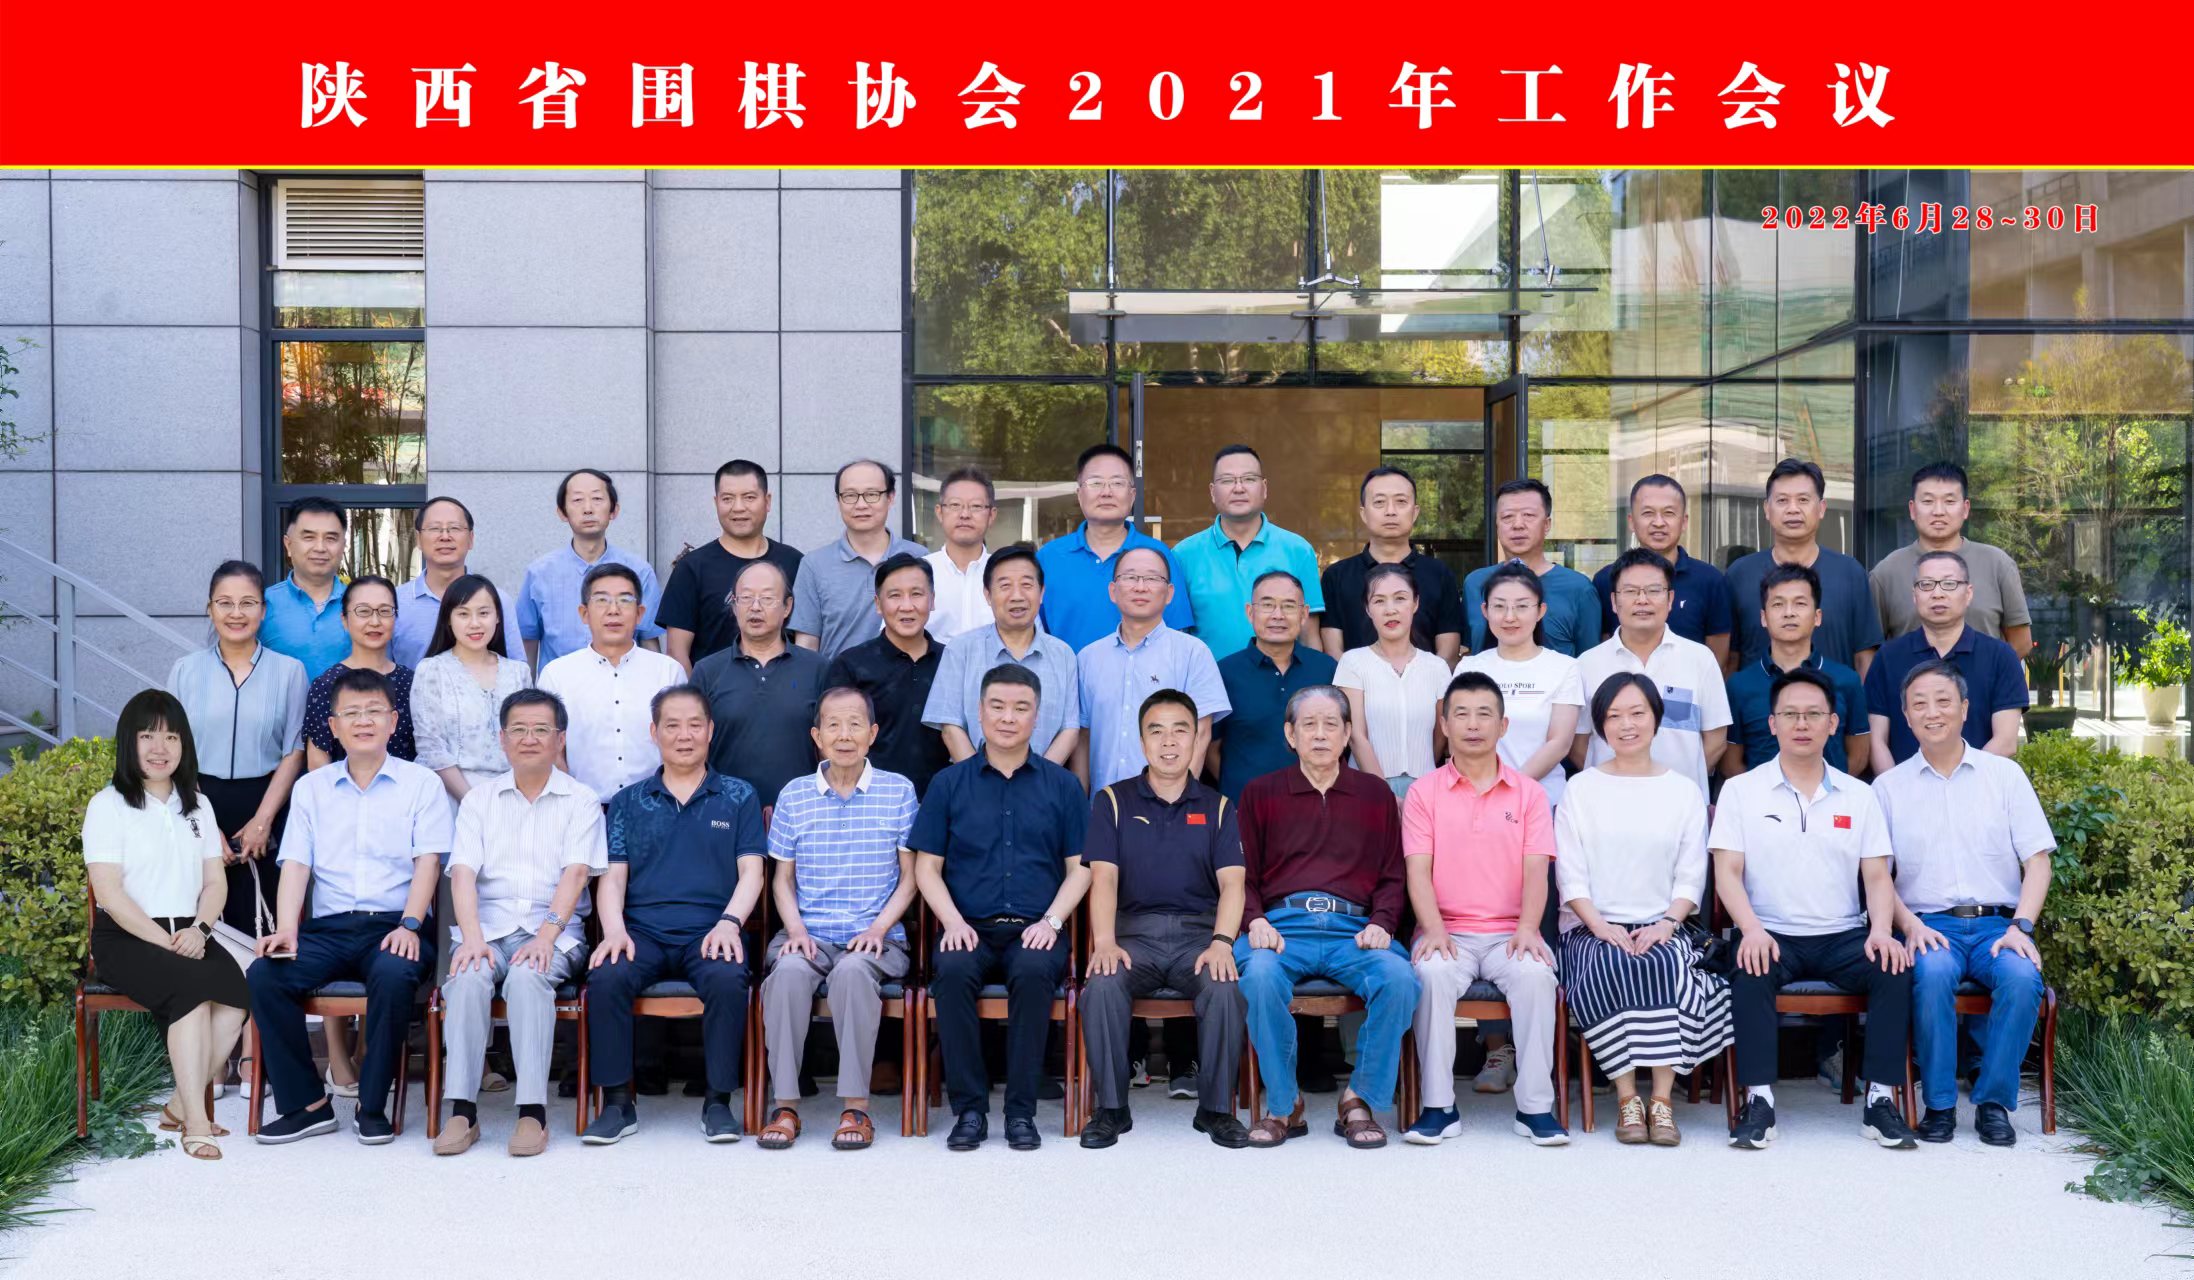 陕西省围棋协会2021年工作会议顺利召开